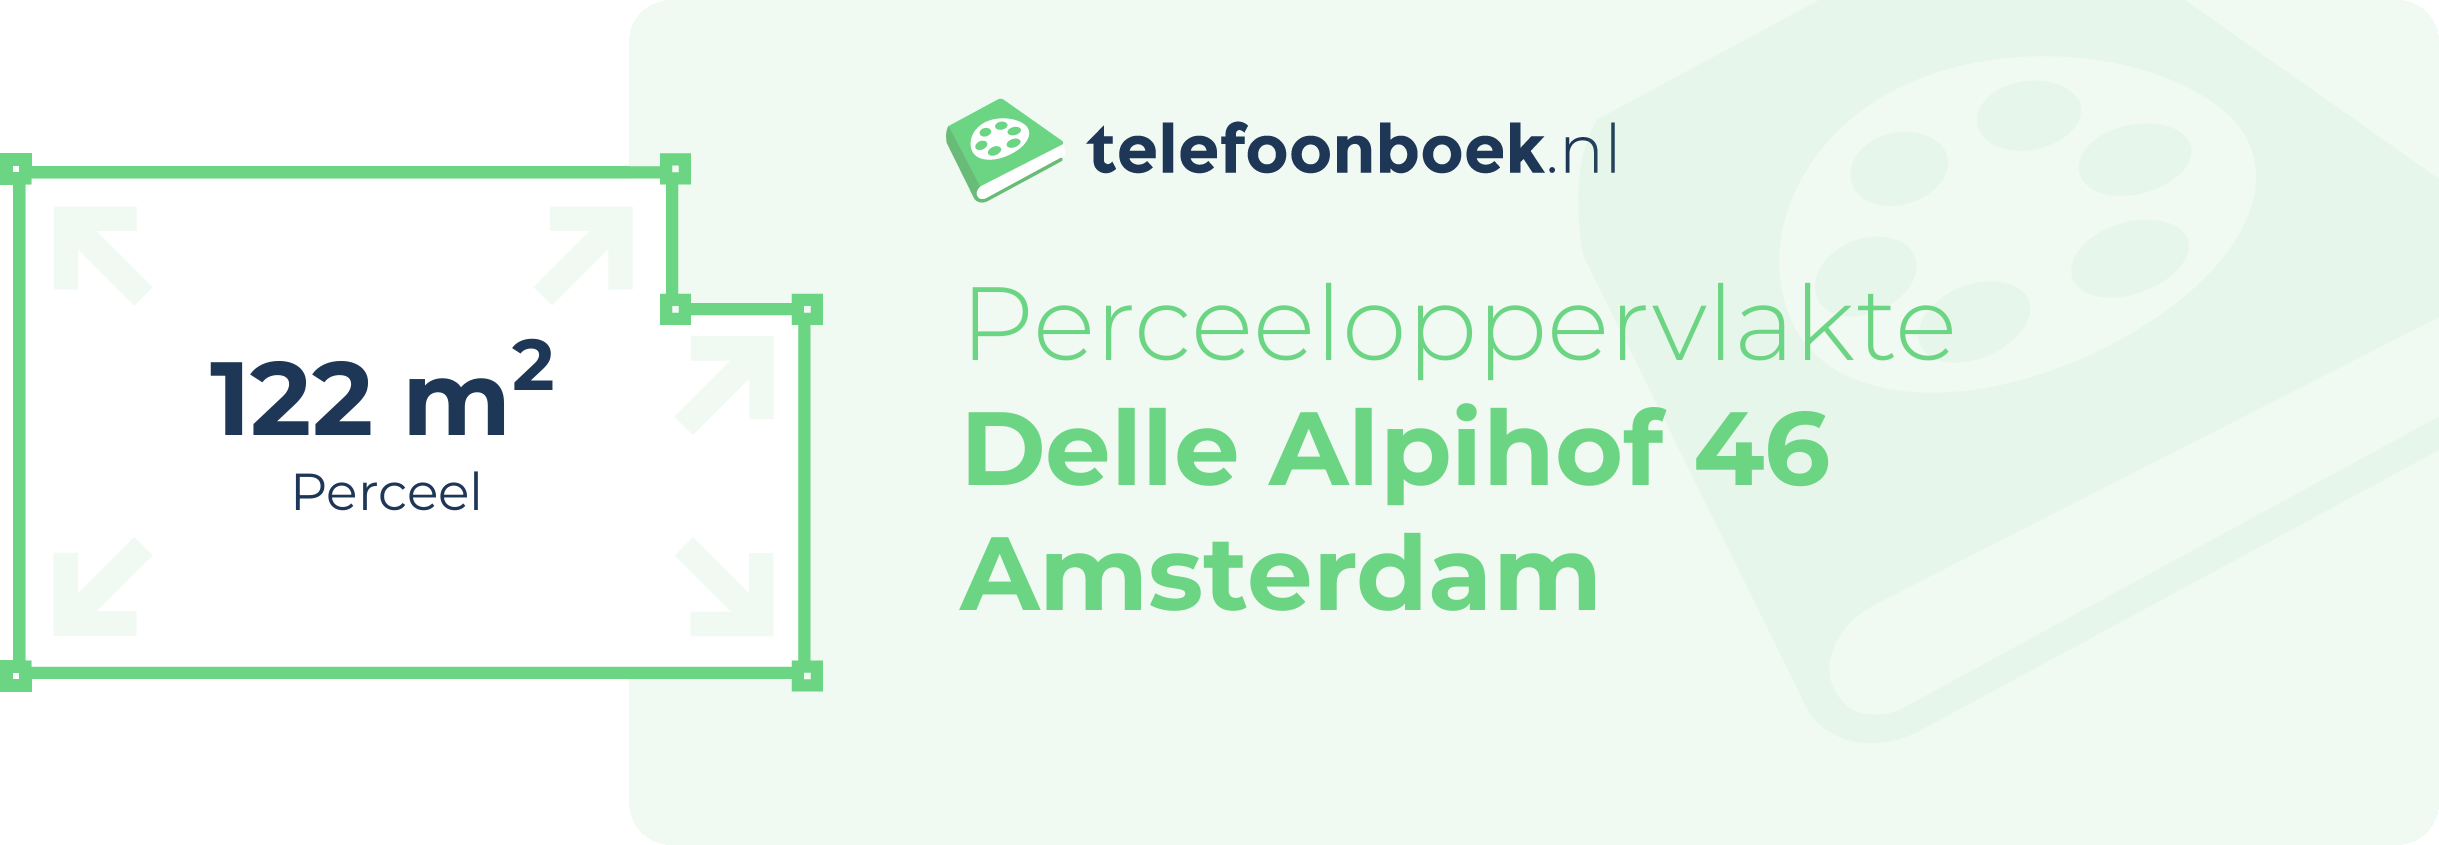 Perceeloppervlakte Delle Alpihof 46 Amsterdam